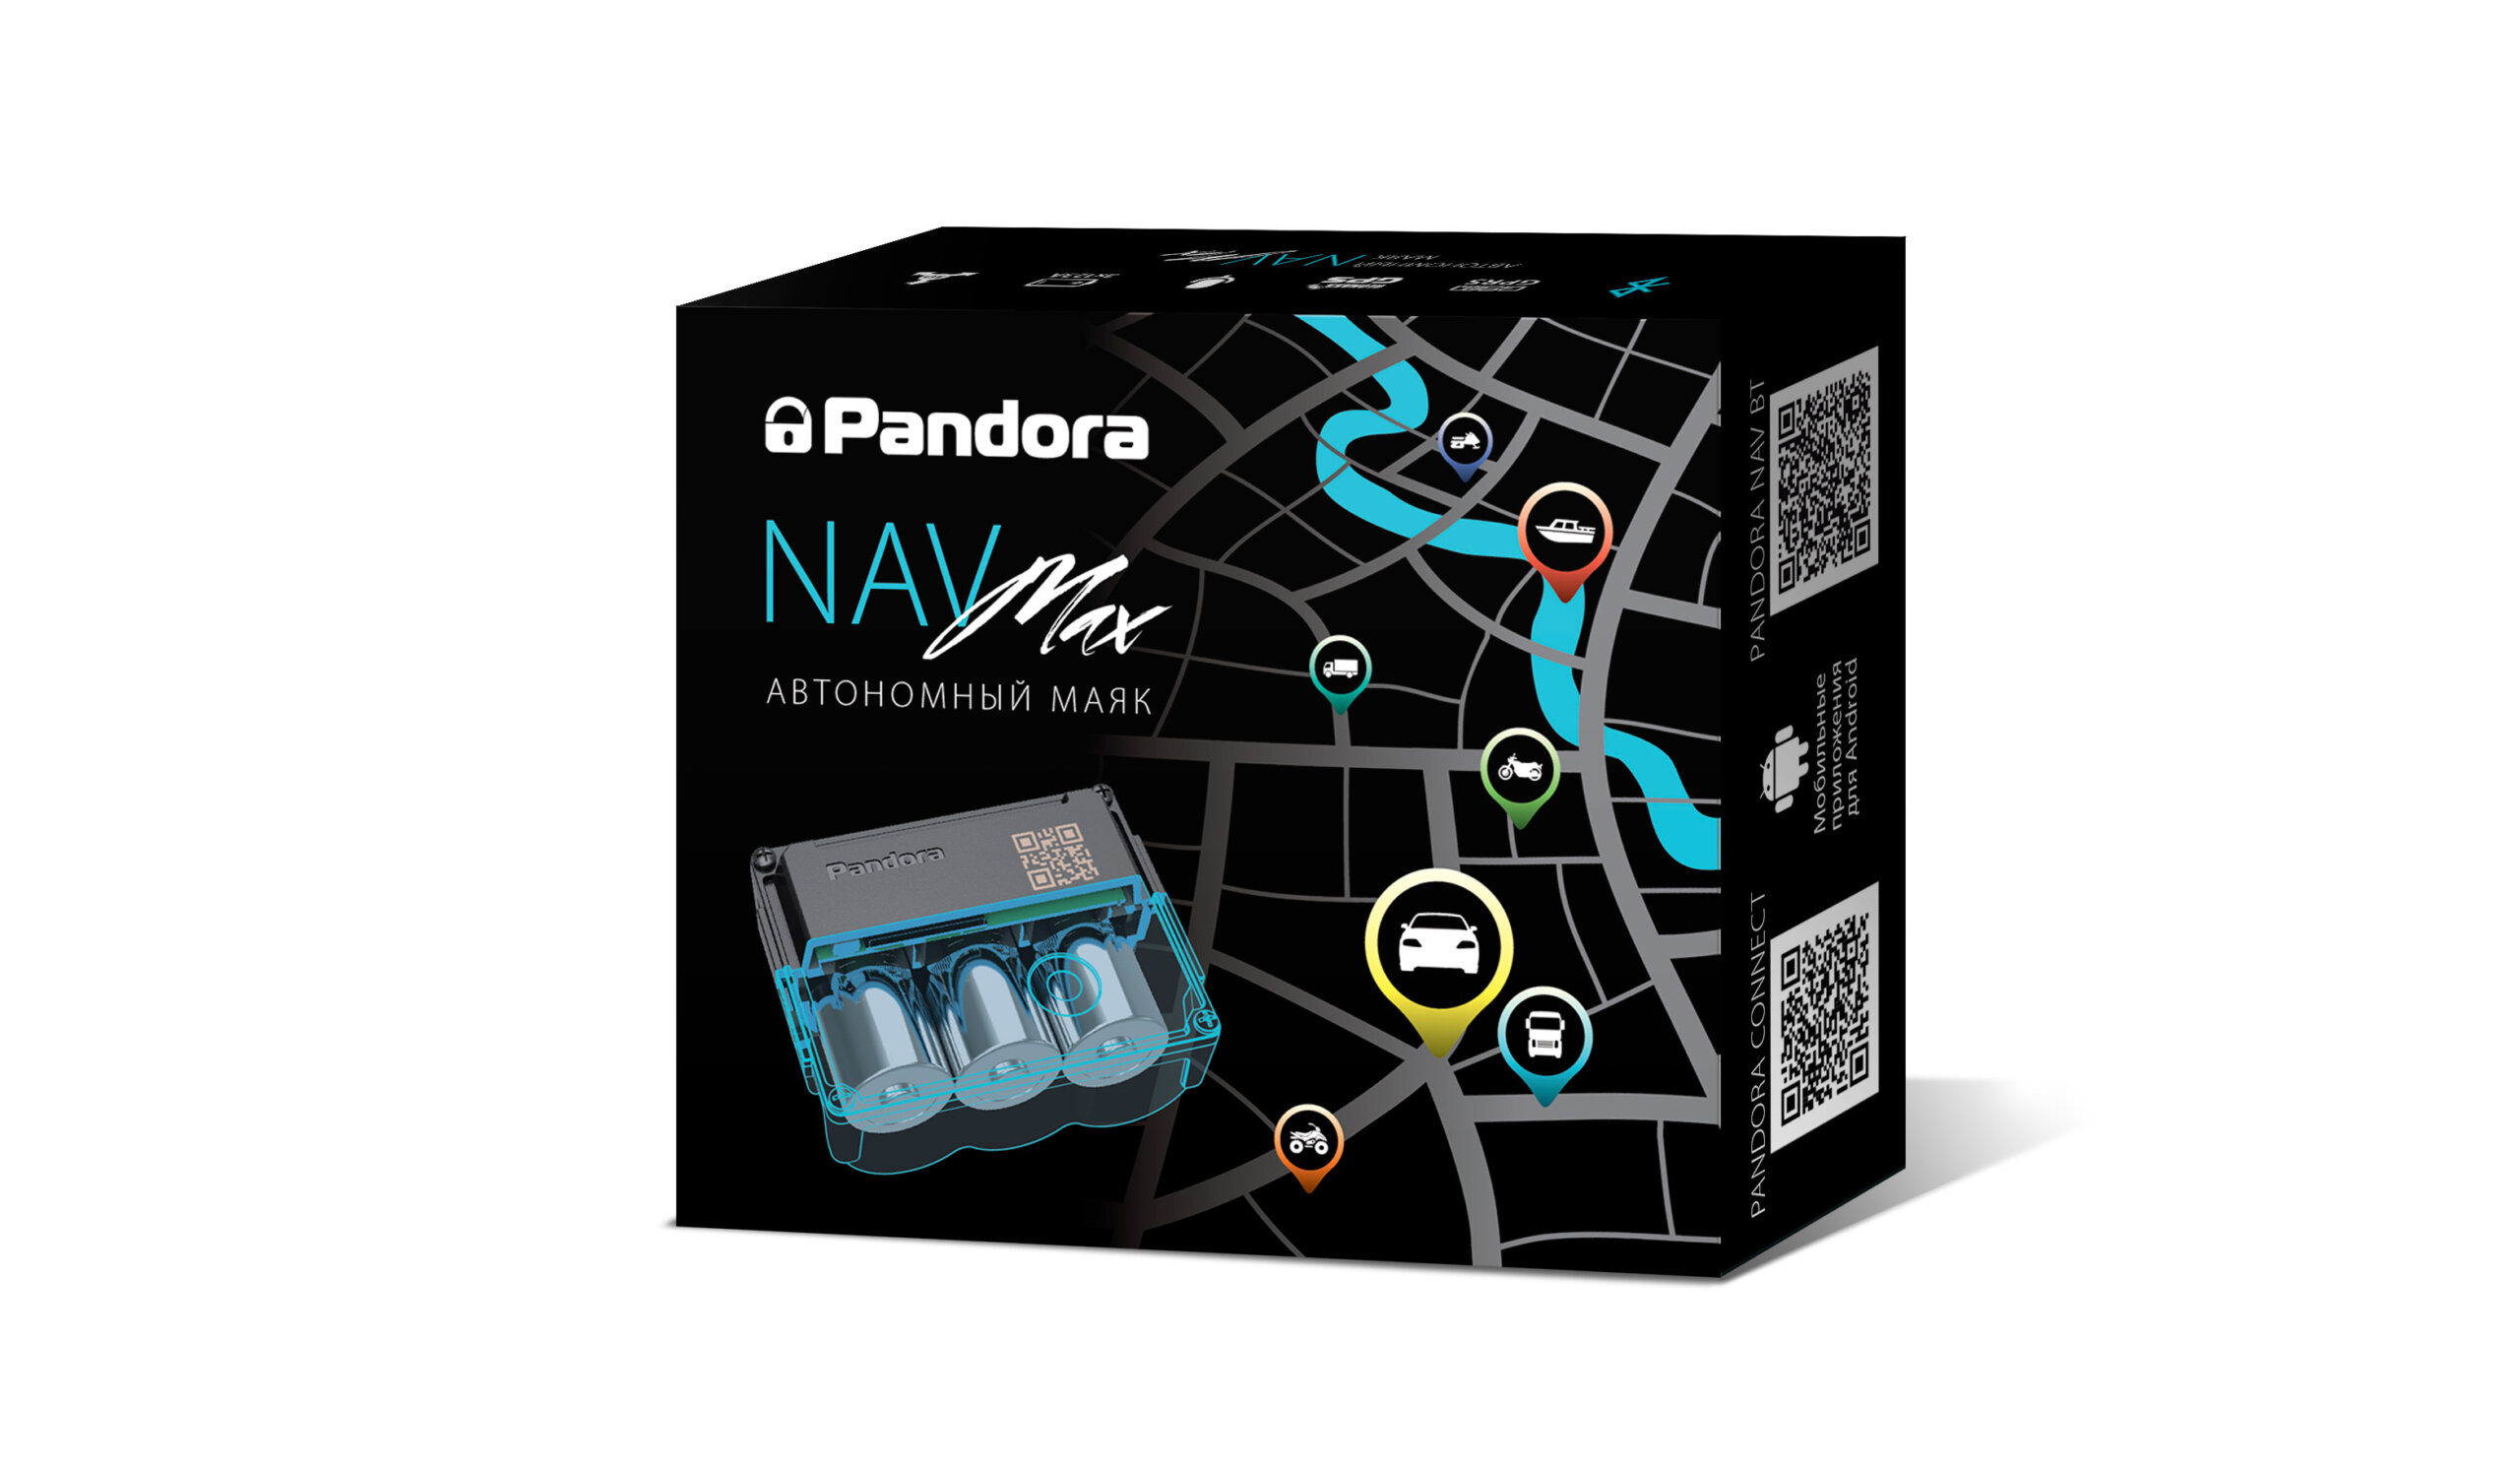 Поисково-навигационный маяк Pandora NAV-Max